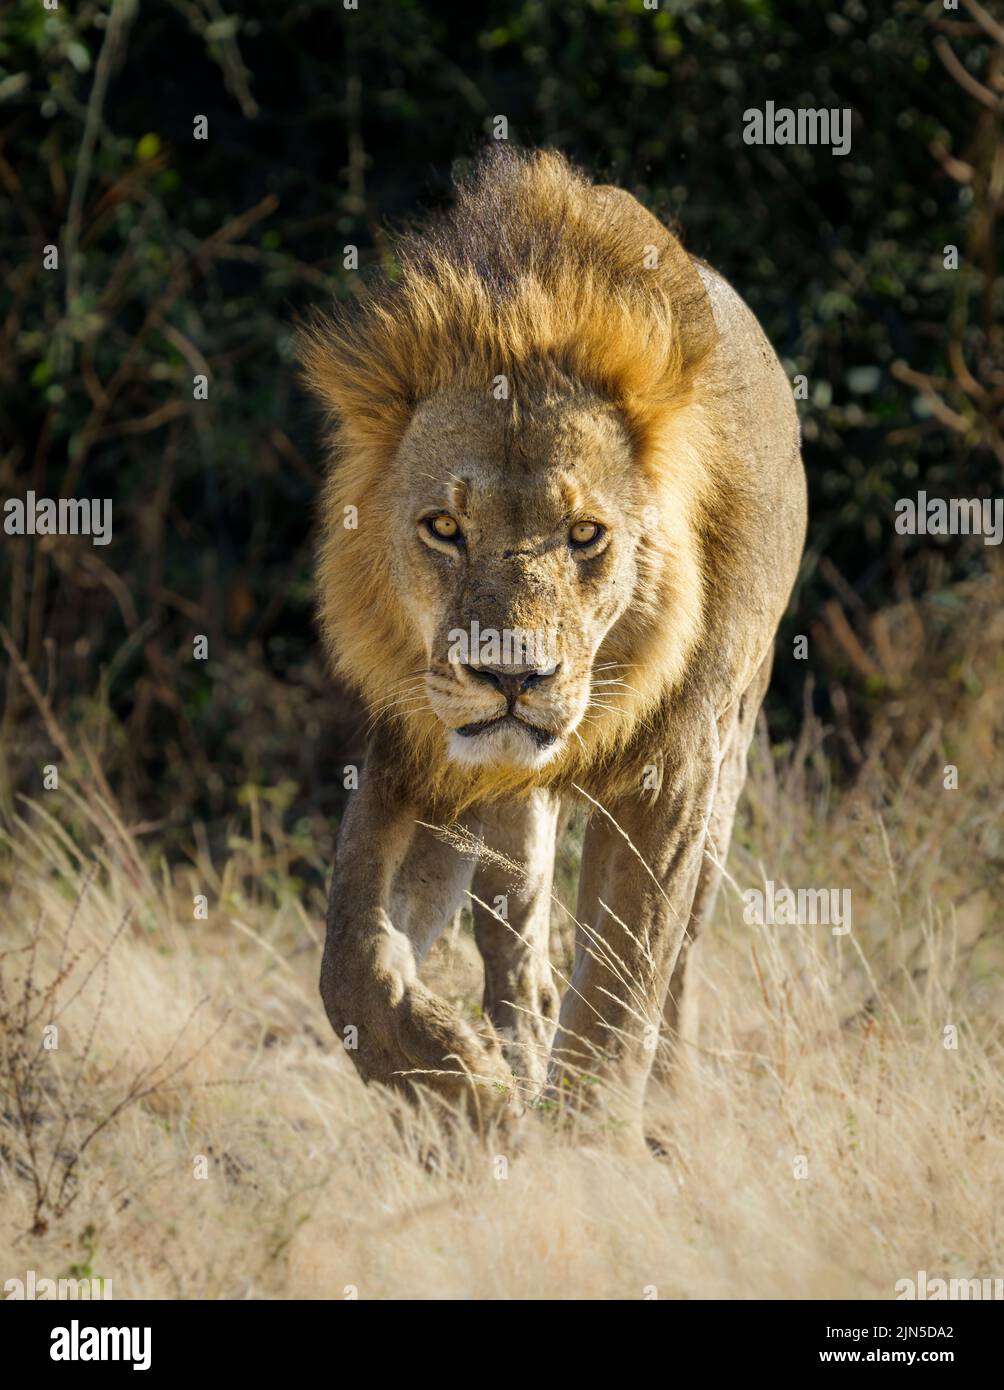 Das Porträt des Löwen (Panthera leo) geht in Richtung Kamera. Unscharfer Hintergrund. Chobe-Nationalpark, Botsuana, Afrika Stockfoto